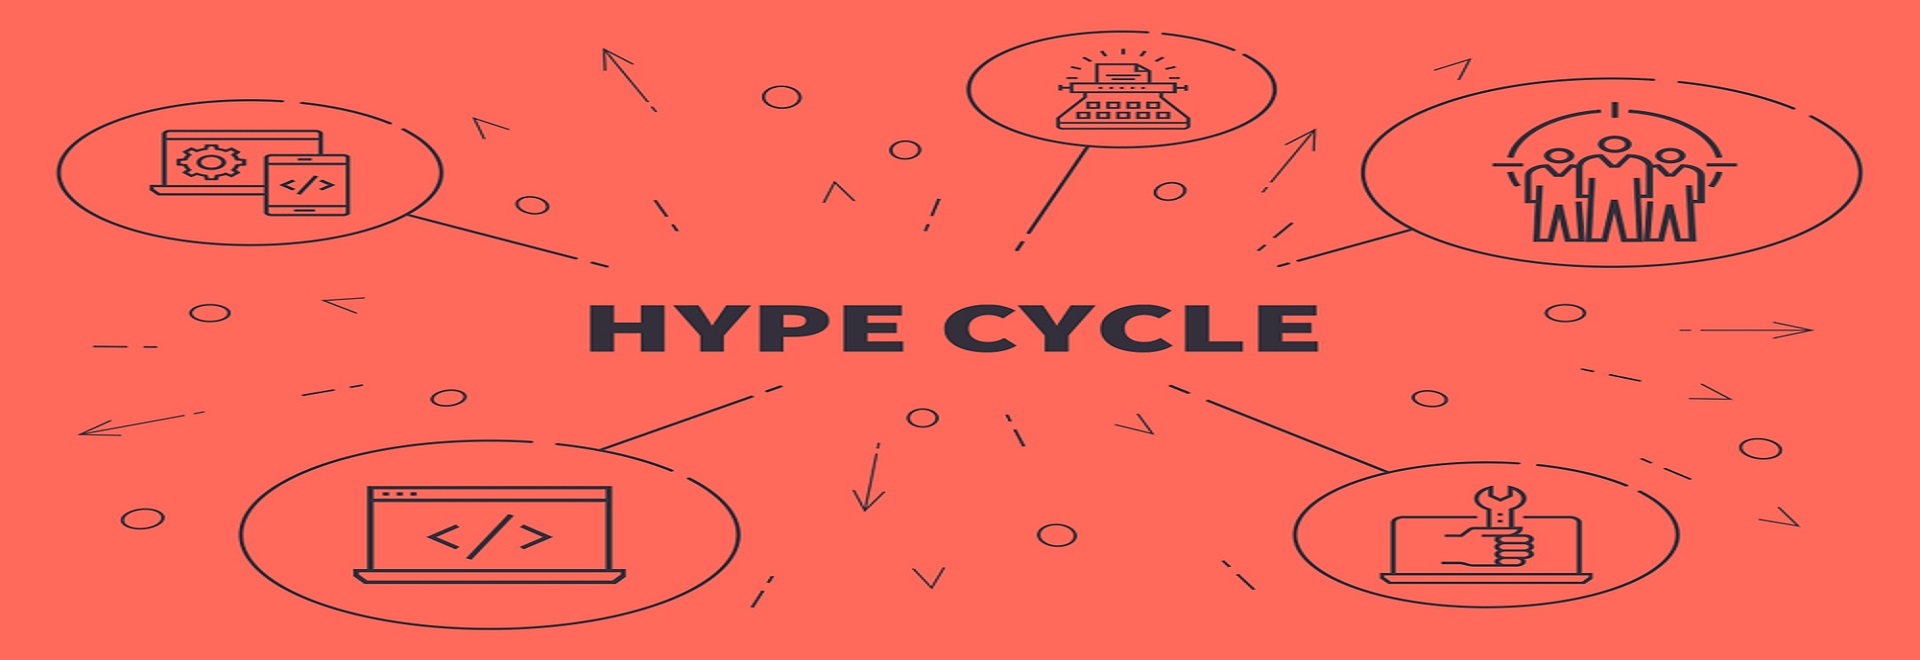 hype cycle shutterstock OpturaDesign - چرخه هایپ گارتنر (قسمت دوم)